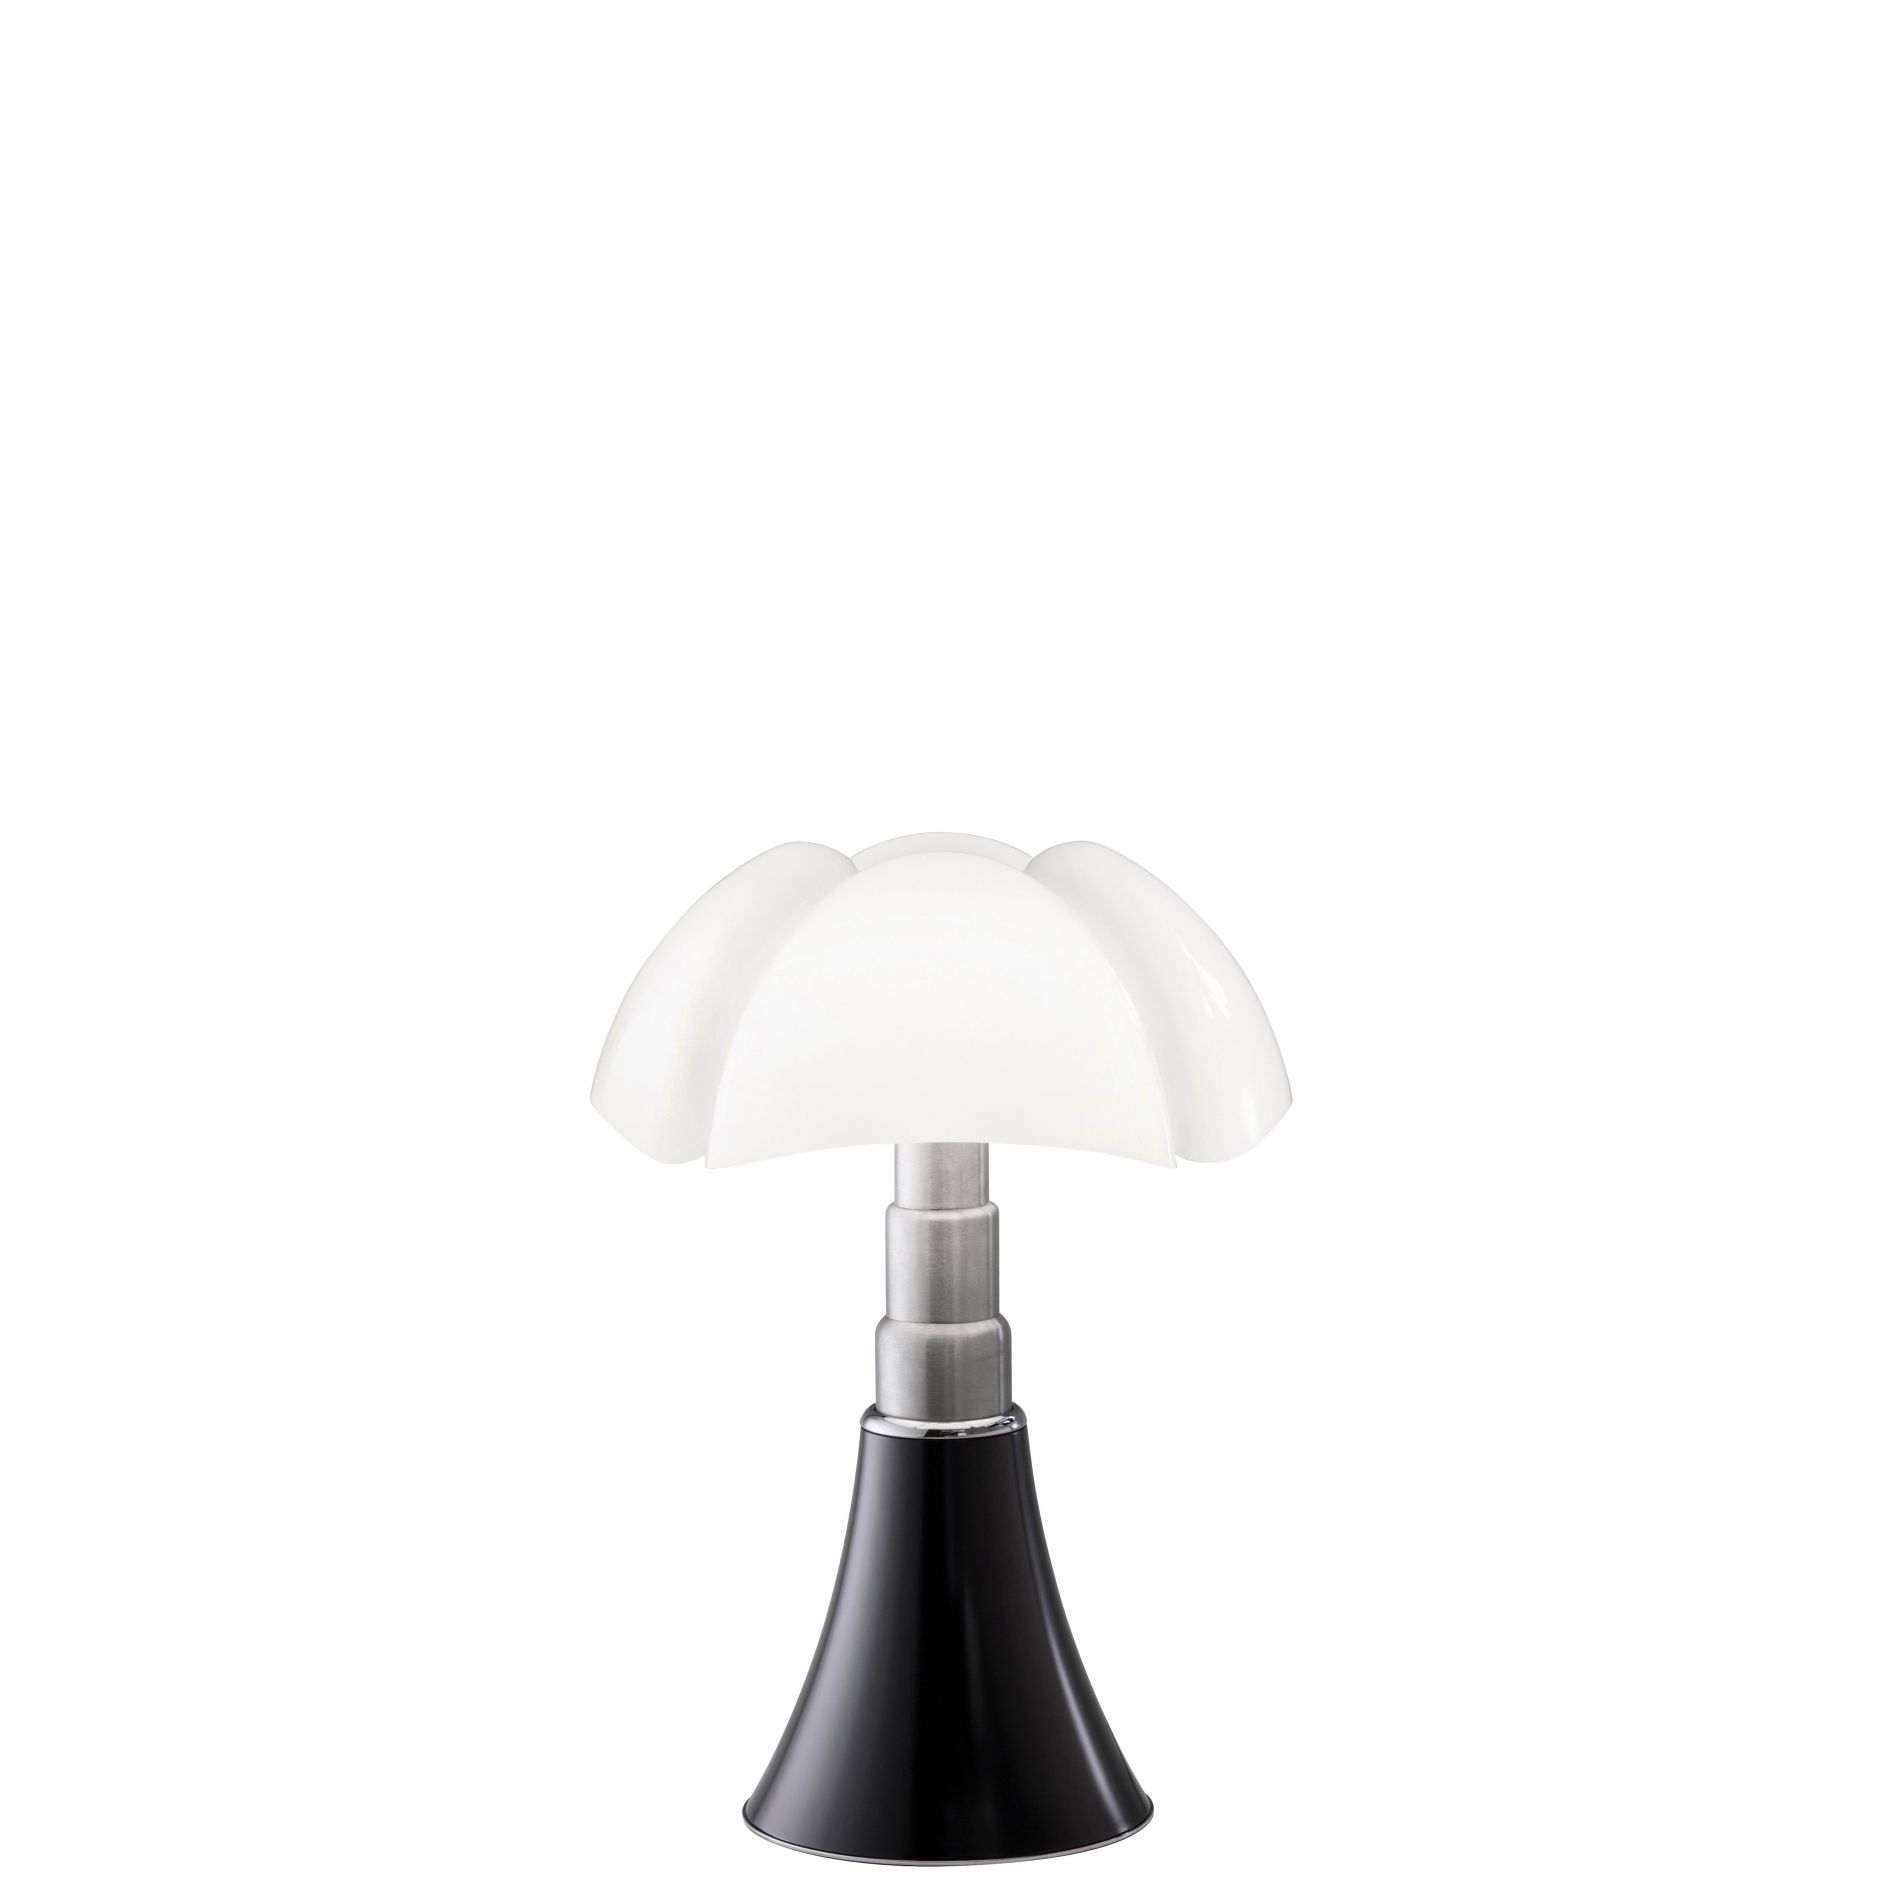 Lampe MINI PIPISTRELLO LED dimmable couleur noir ébène